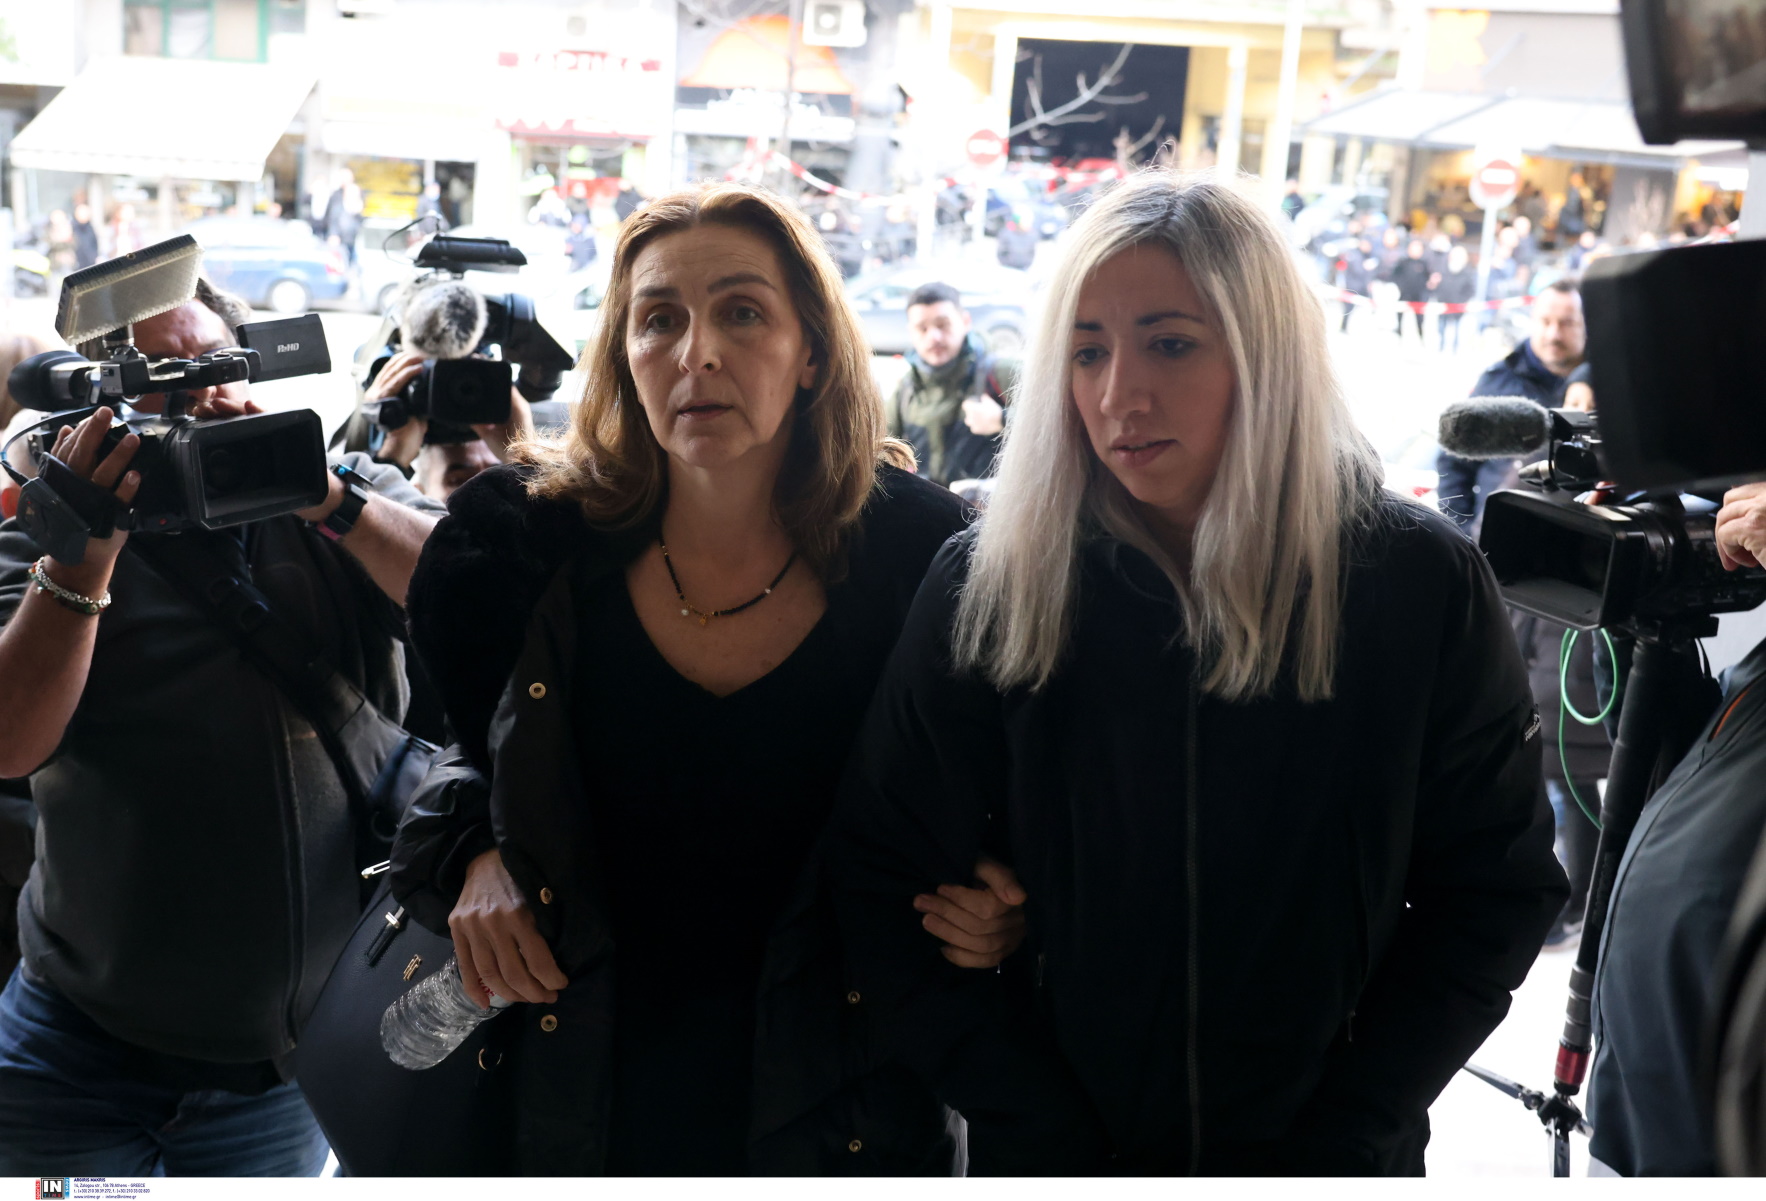 Άλκης Καμπανός: «Είμαι η μητέρα του, κοιτάξτε με, σηκώστε το κεφάλι» είπε στους 12 κατηγορούμενους